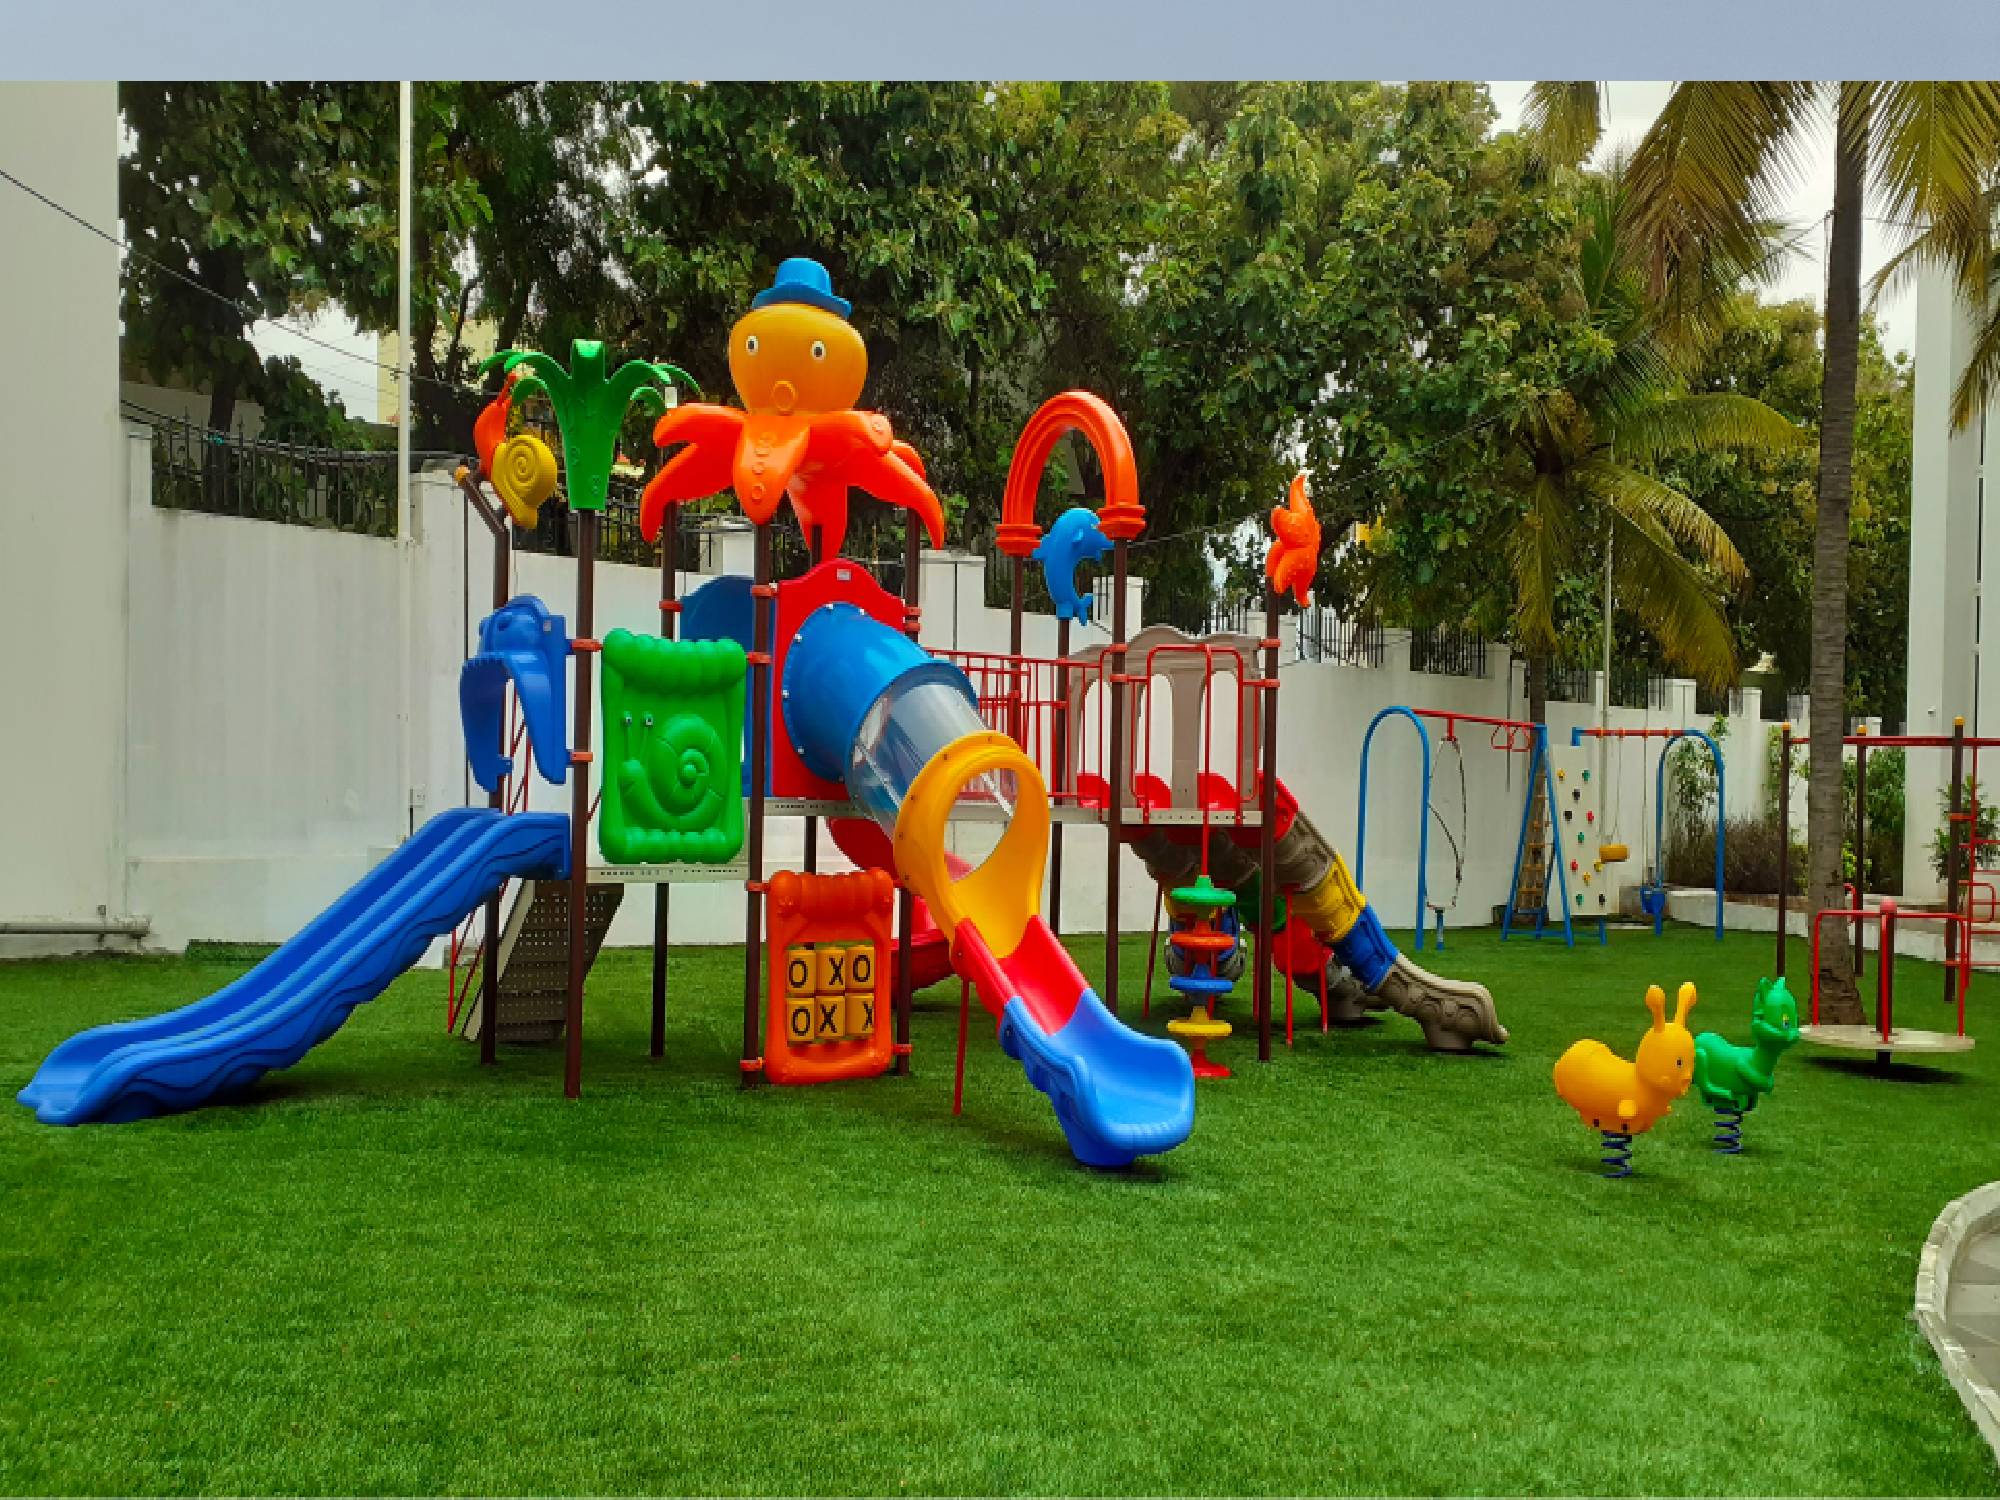 Playground Equipment in Janjgir-Champa